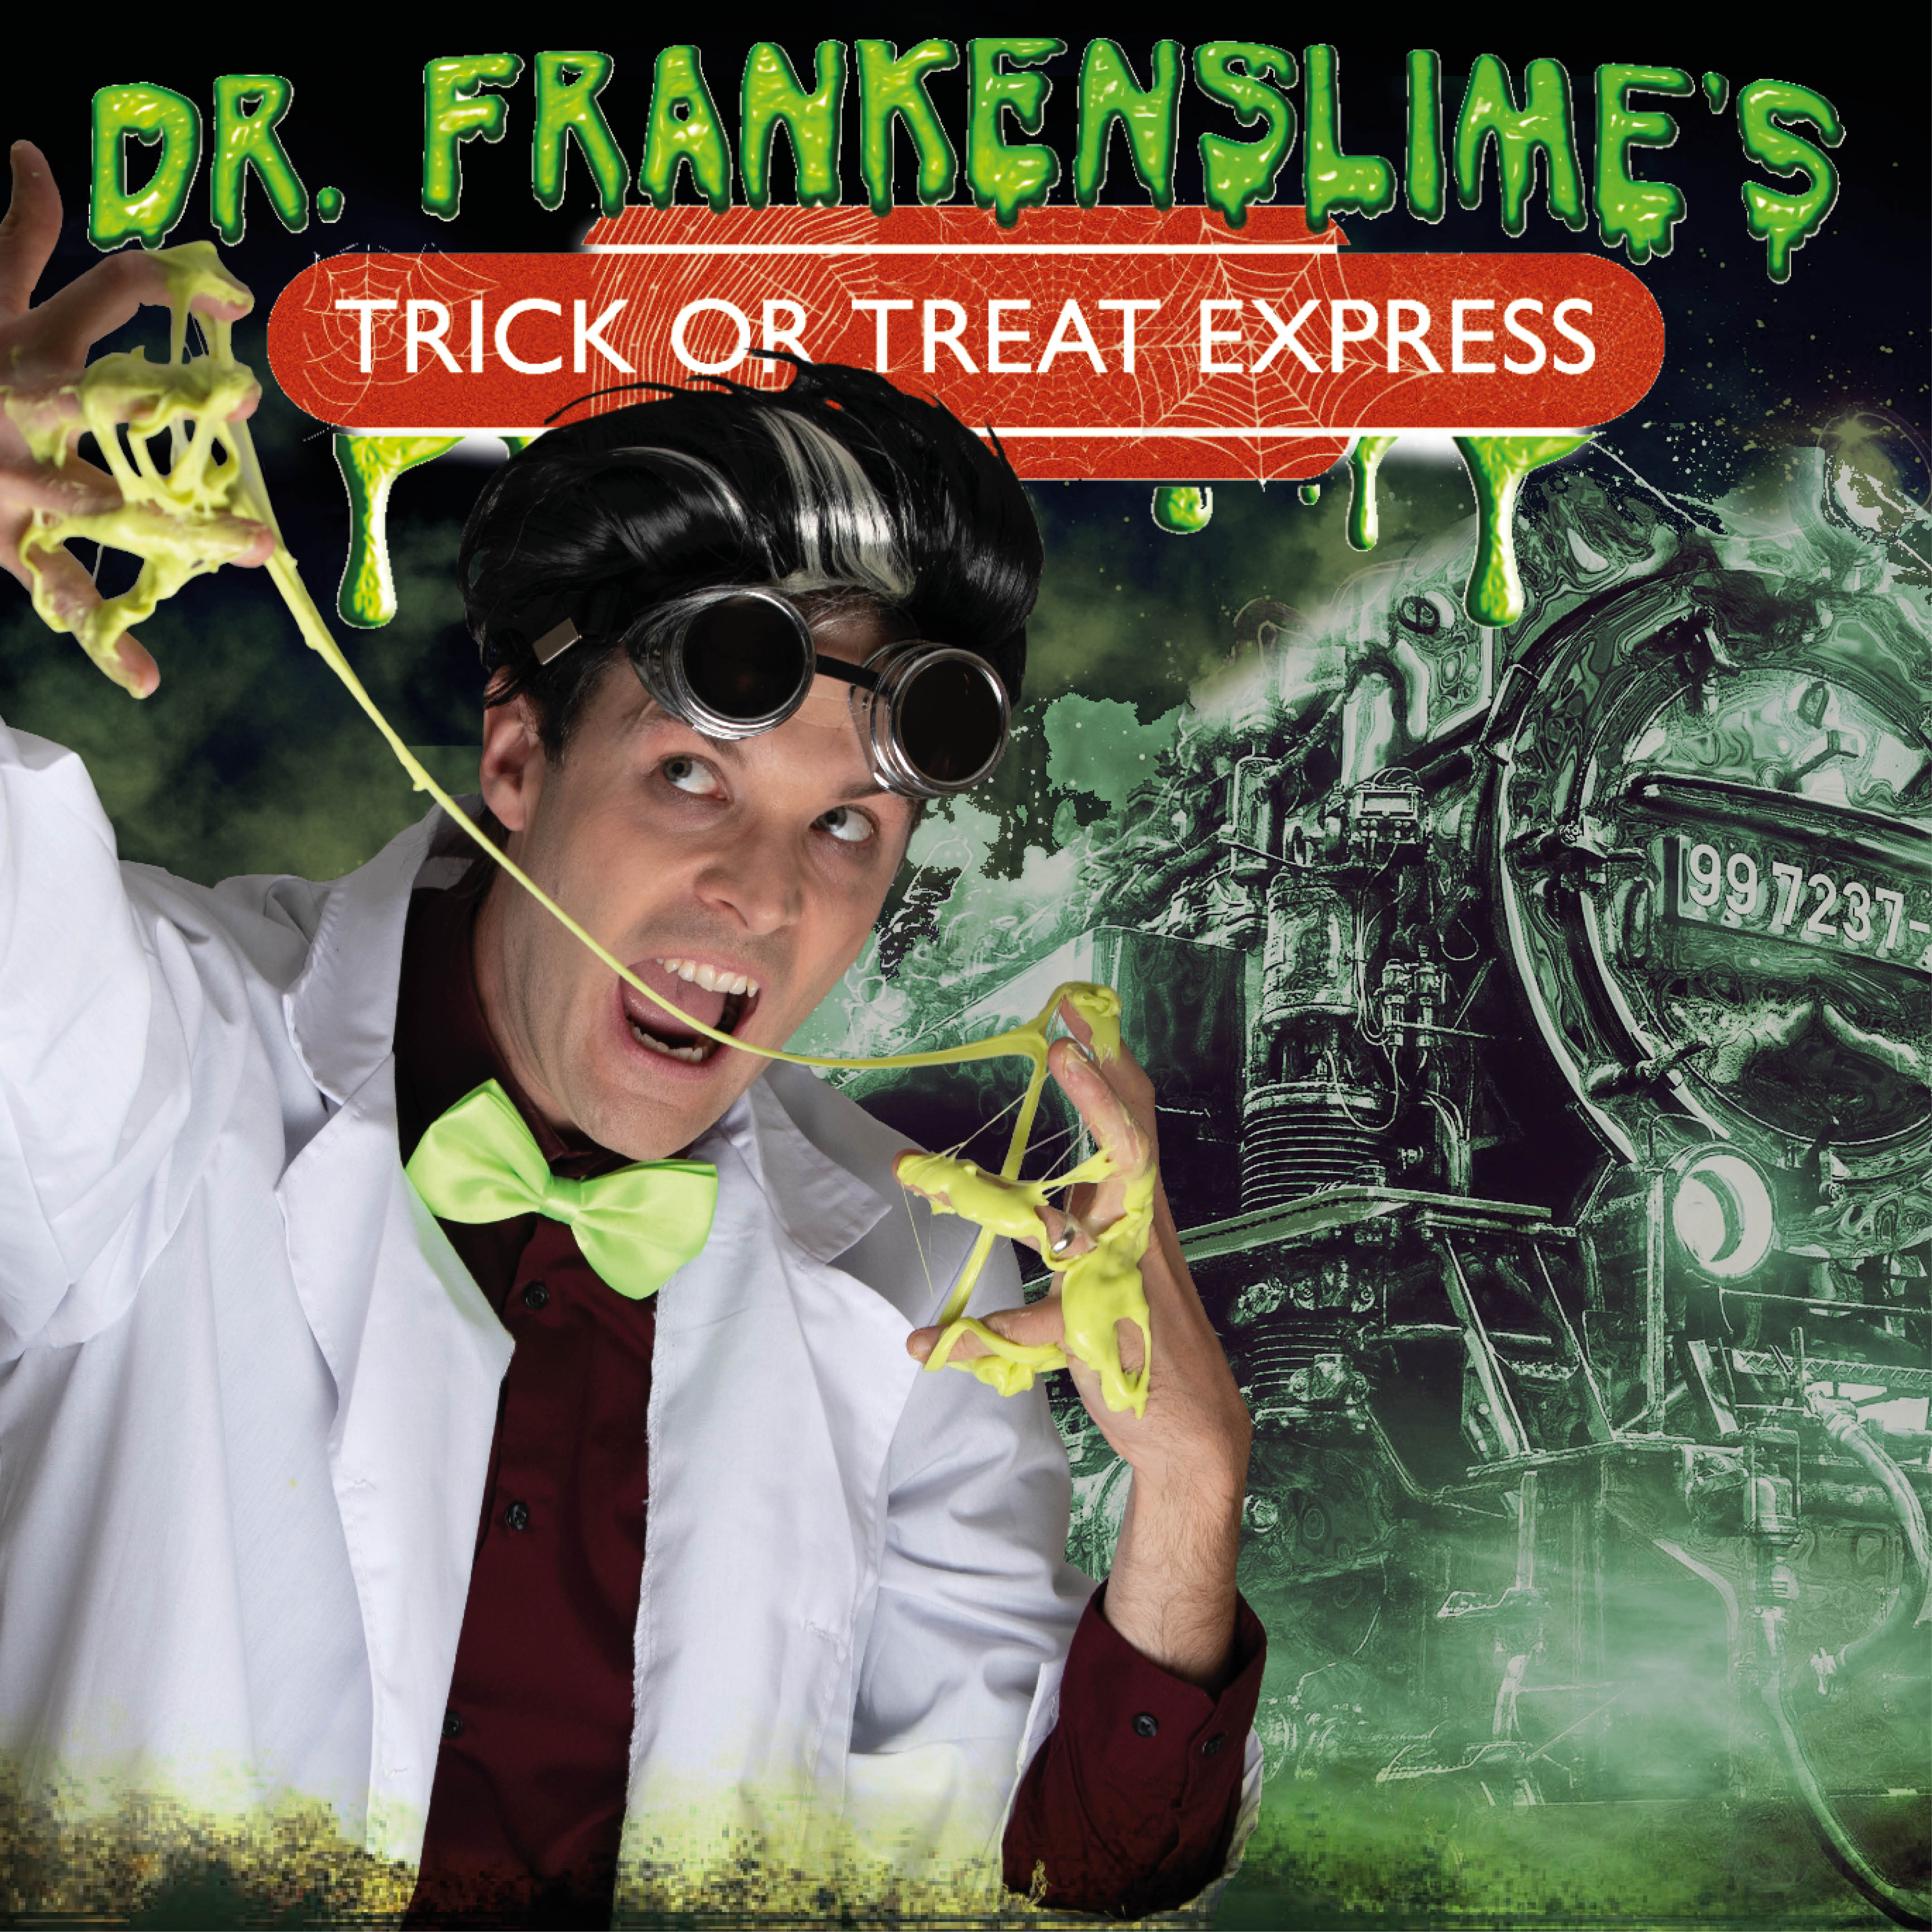 Dr Frankenslime's Trick or Treat Express!